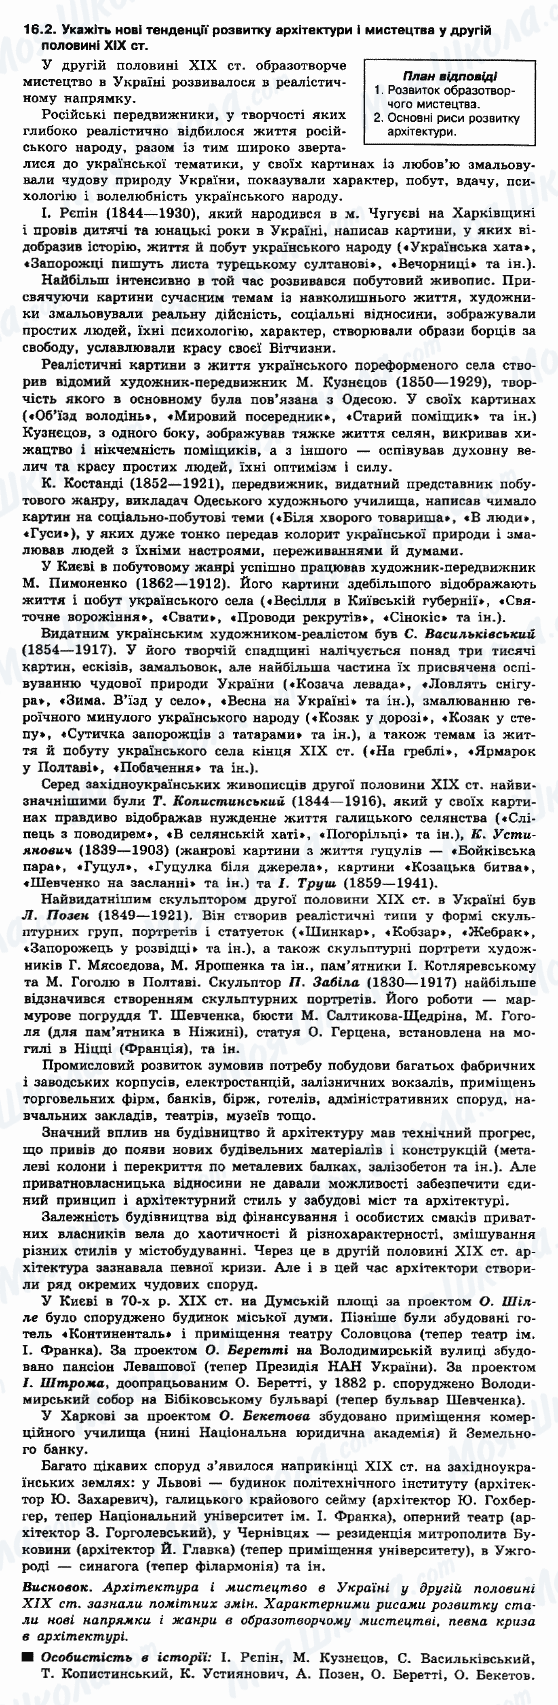 ДПА История Украины 9 класс страница 16.2